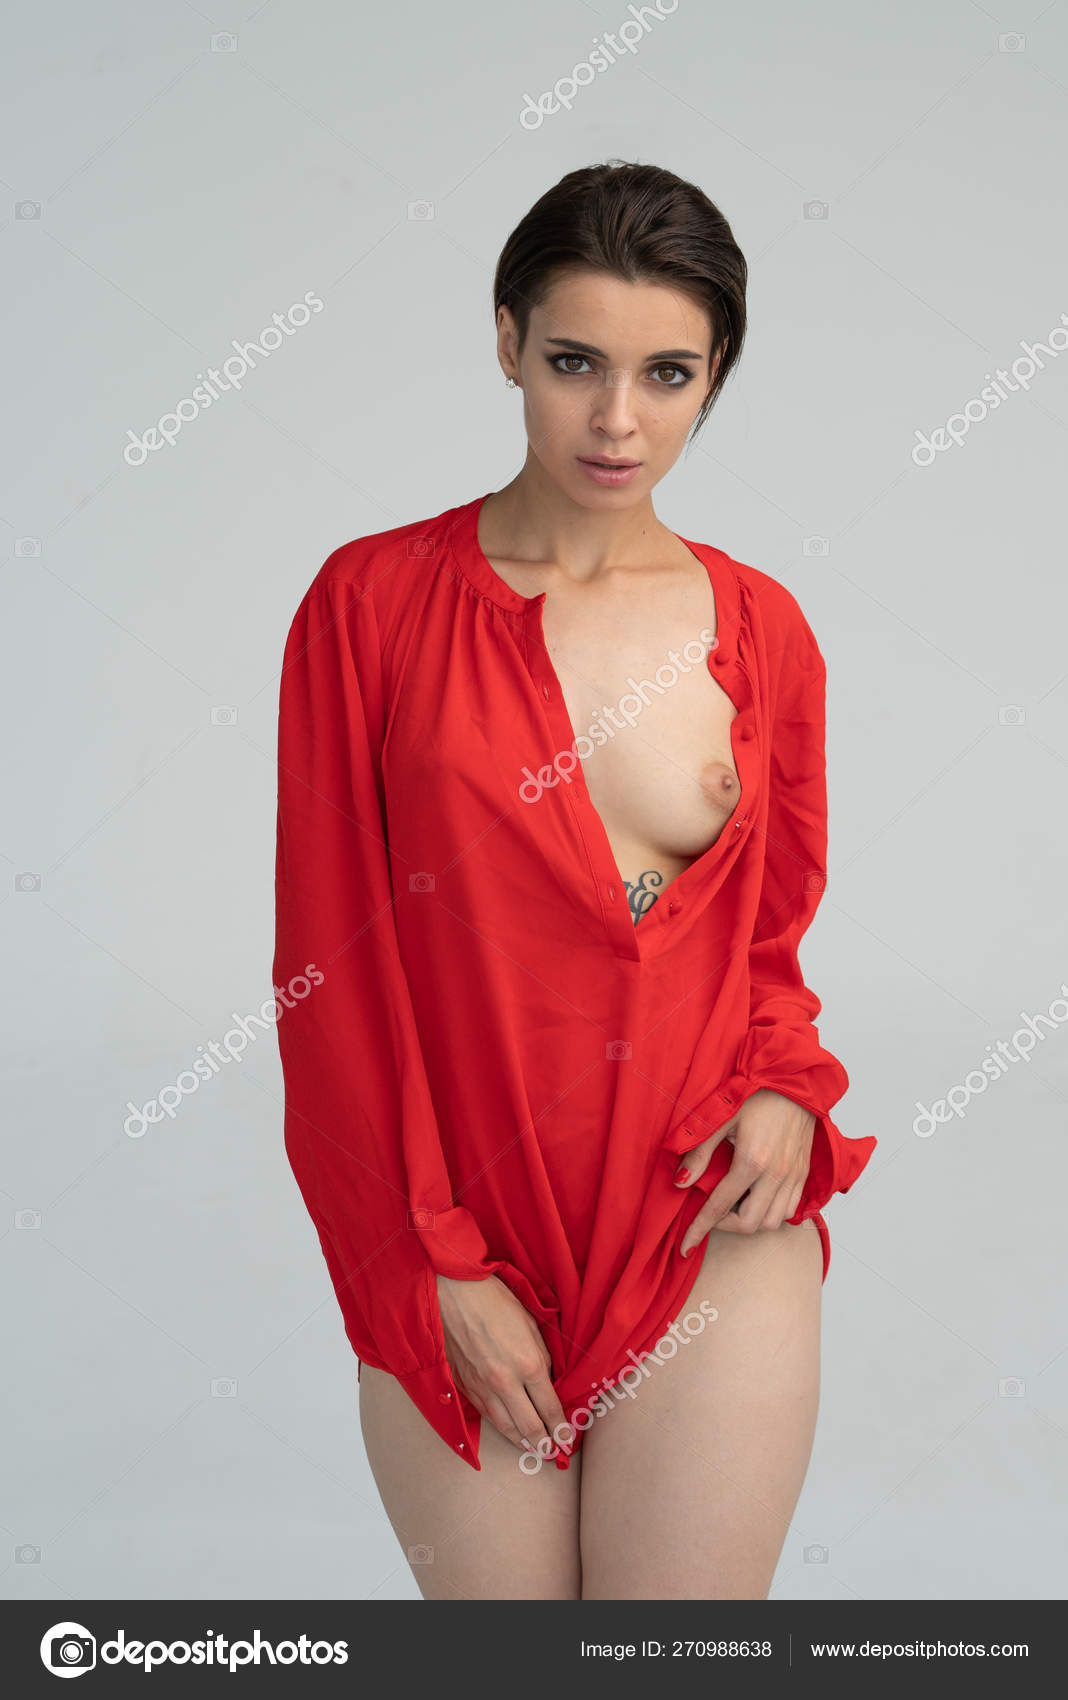 https://st4n.depositphotos.com/10086424/27098/i/1600/depositphotos_270988[001-999]-stock-photo-young-beautiful-girl-posing-nude.jpg